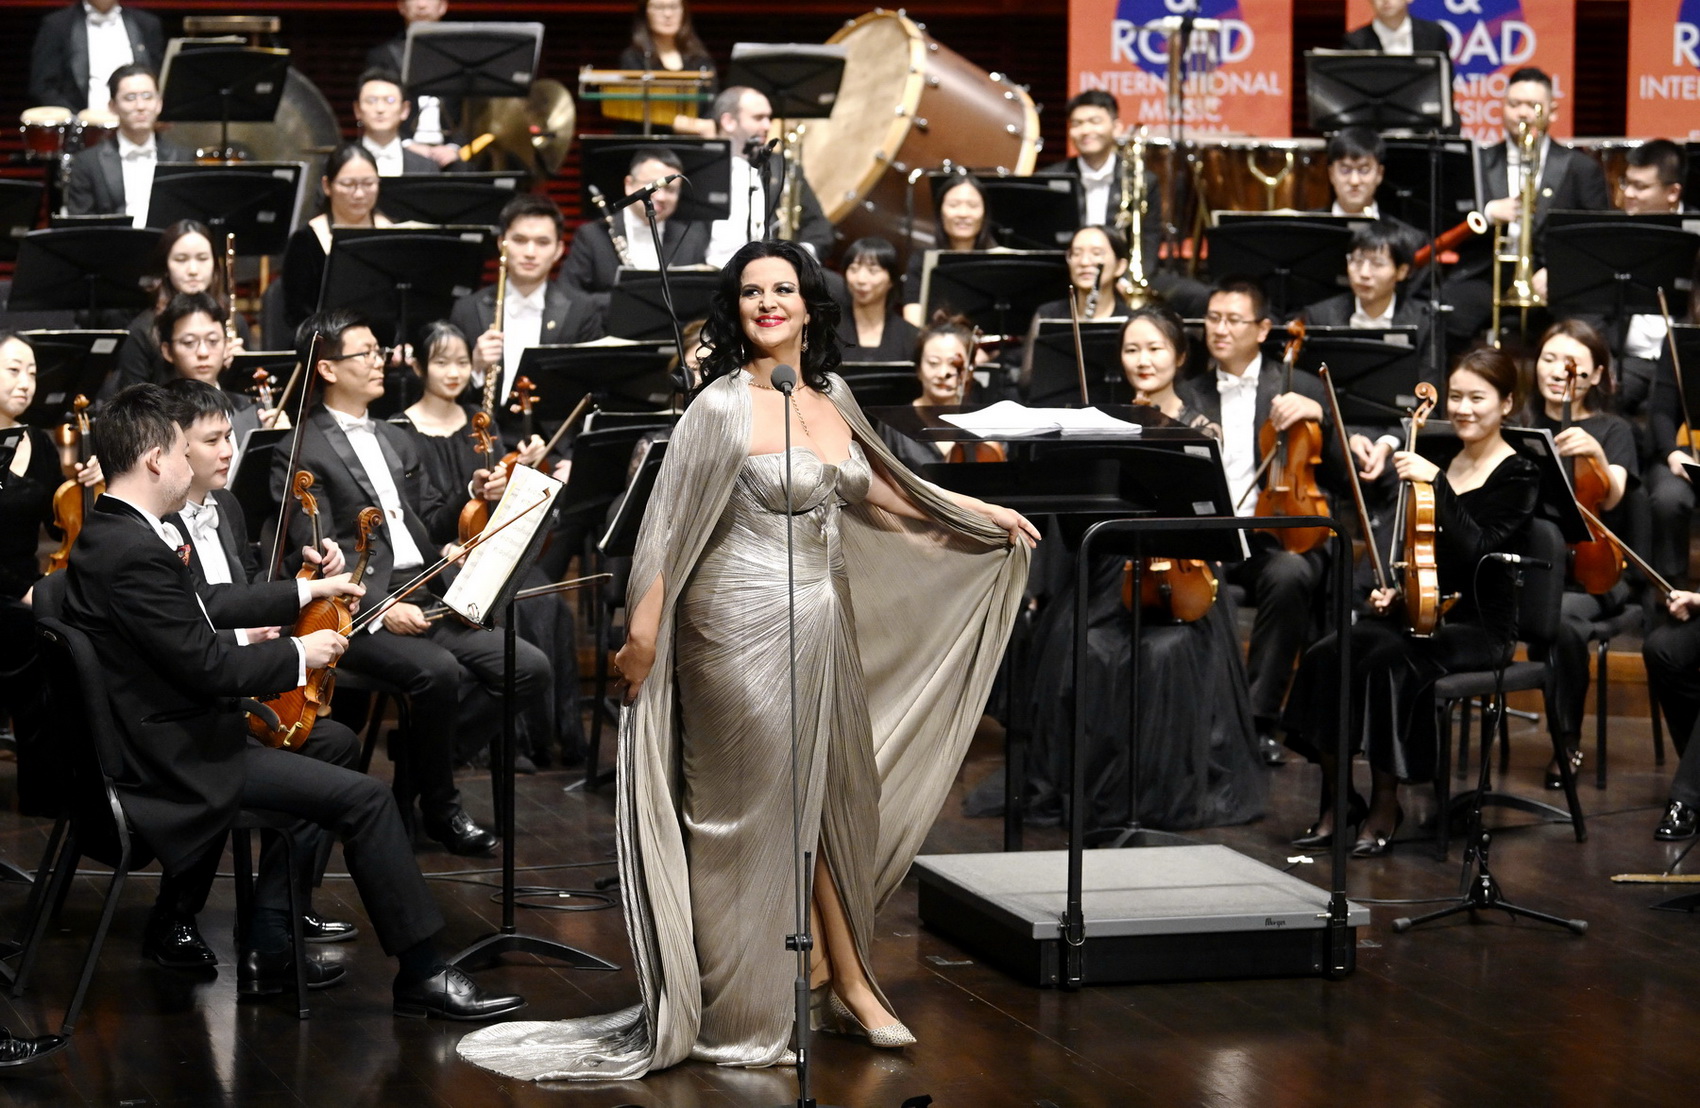 2023深圳“一带一路”国际音乐季开幕音乐会奏响，多国音乐家献上顶级艺术盛宴